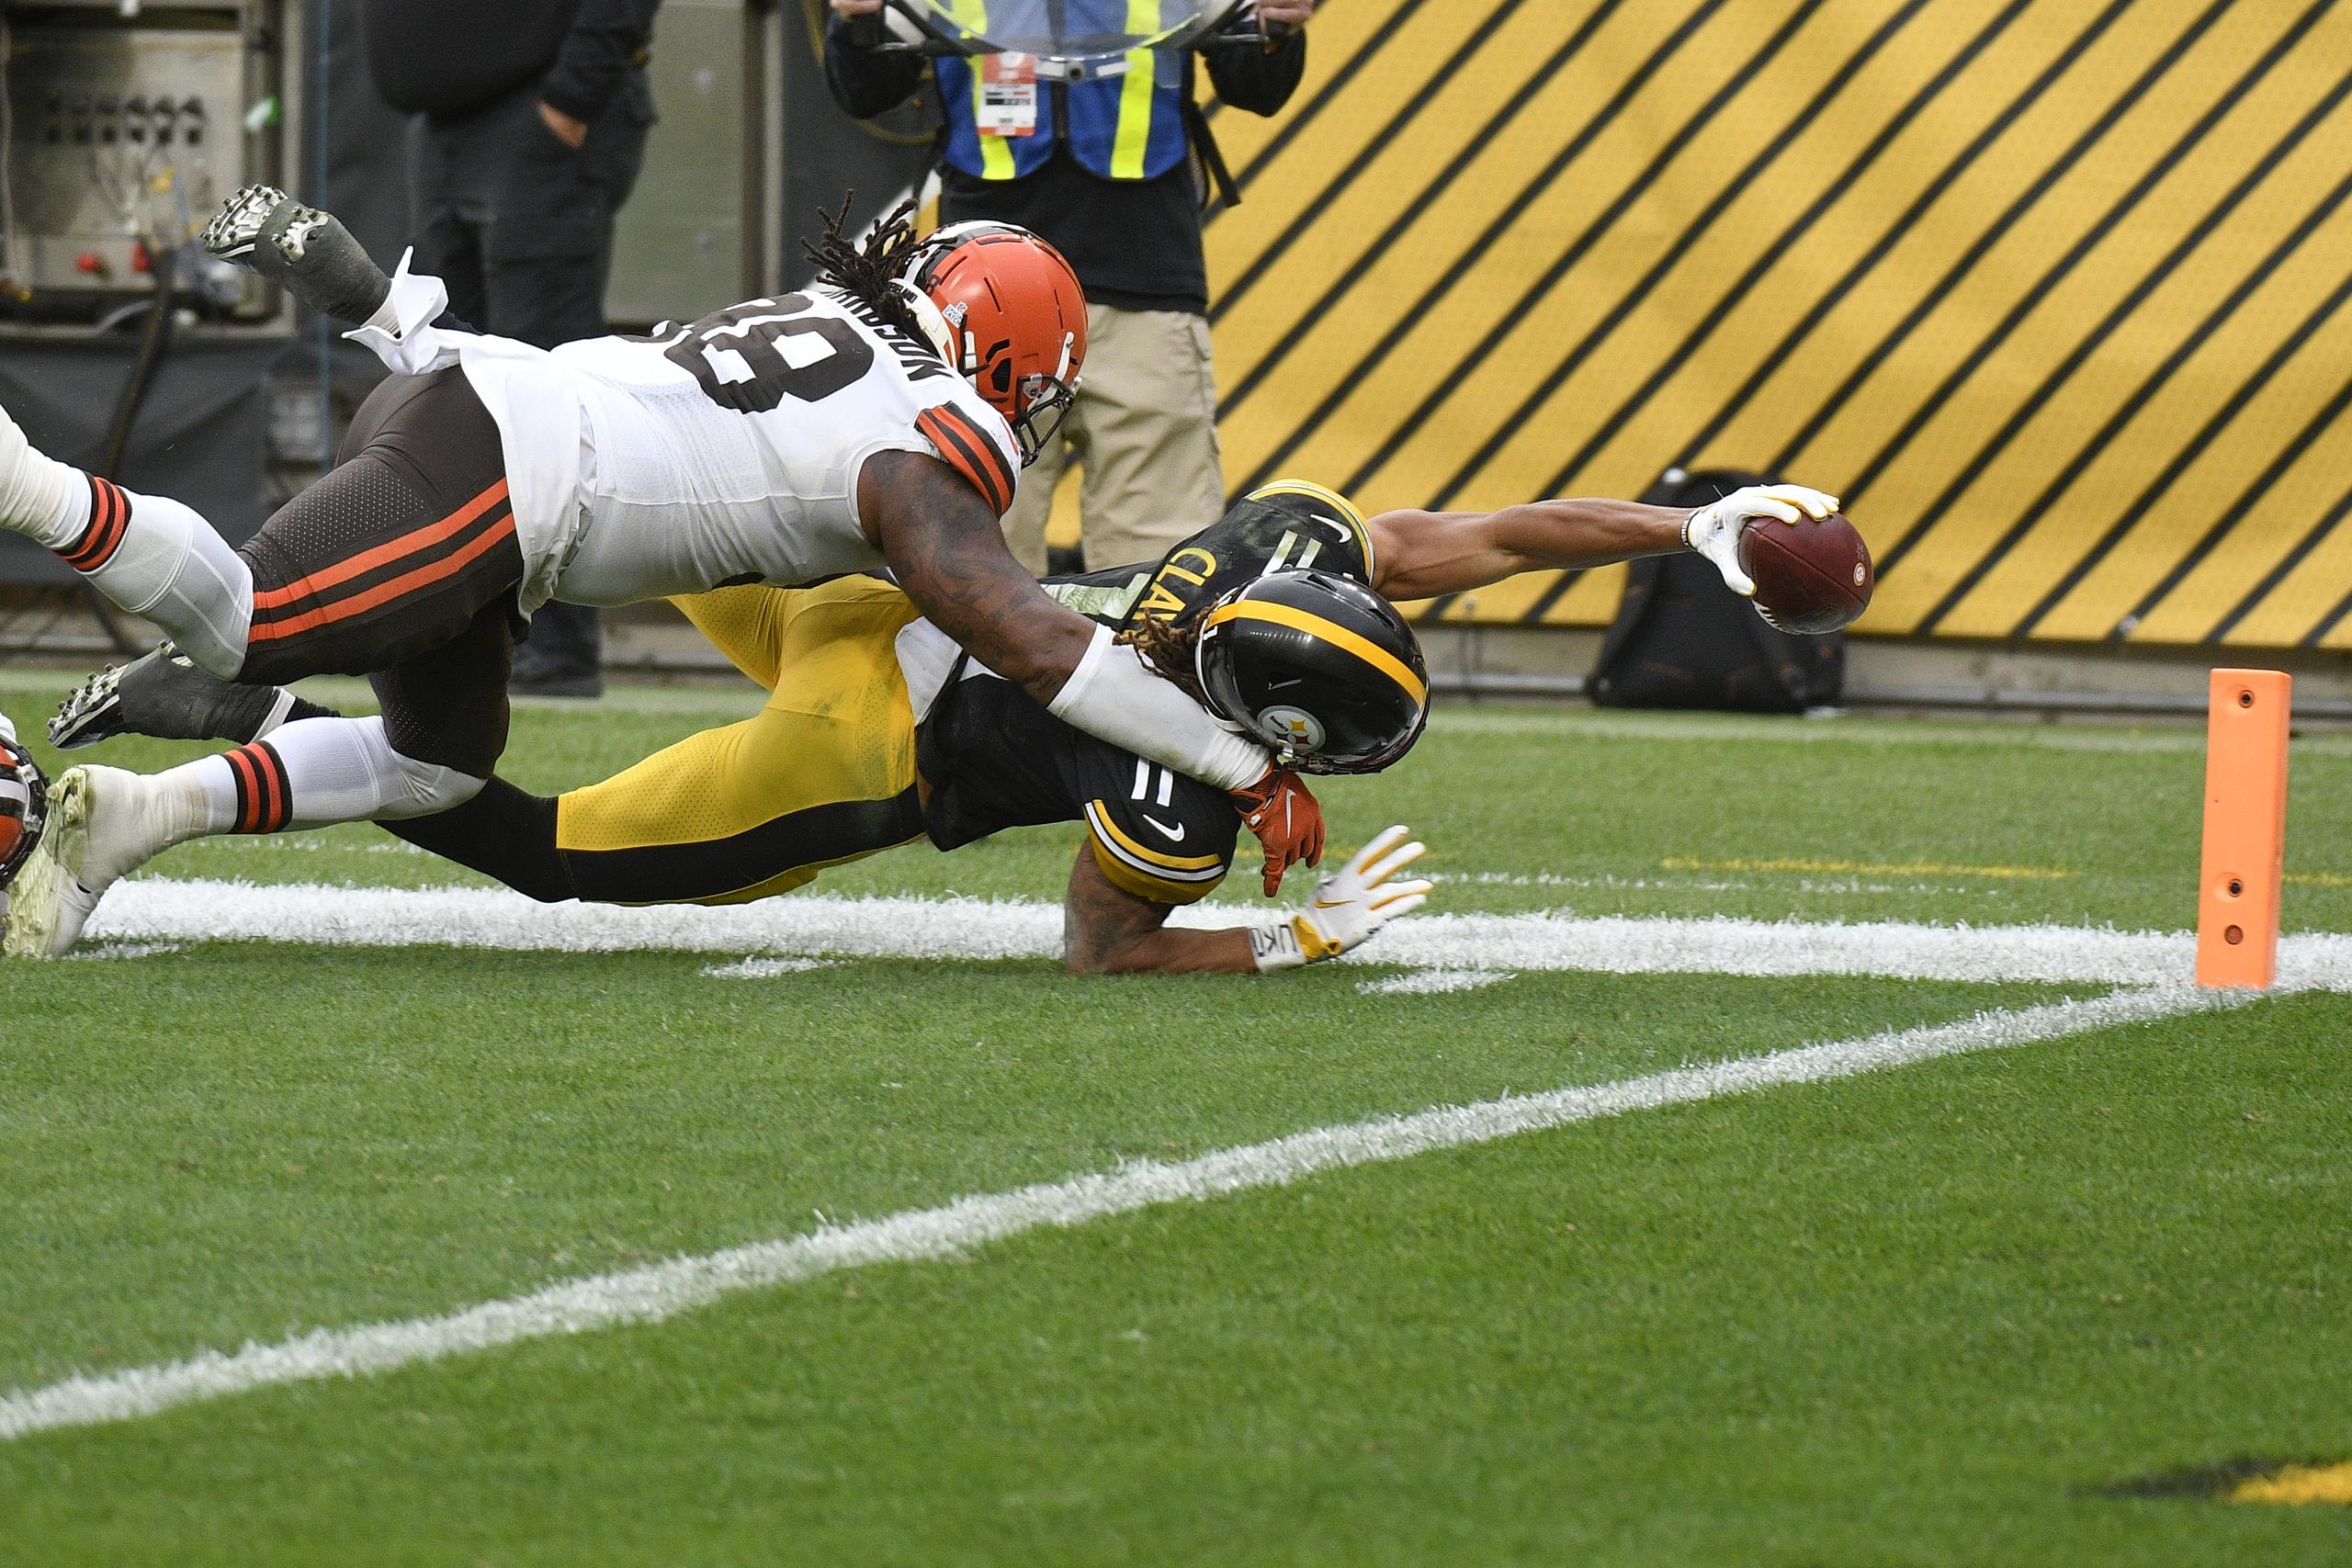 El 'wide receiver' Chase Claypool (11), de los Steelers de Pittsburgh, se estira tratando de marcar un 'touchdown' ante la gestión defensiva del 'defensive tackle' Sheldon Richardson (98), de los Browns de Cleveland.